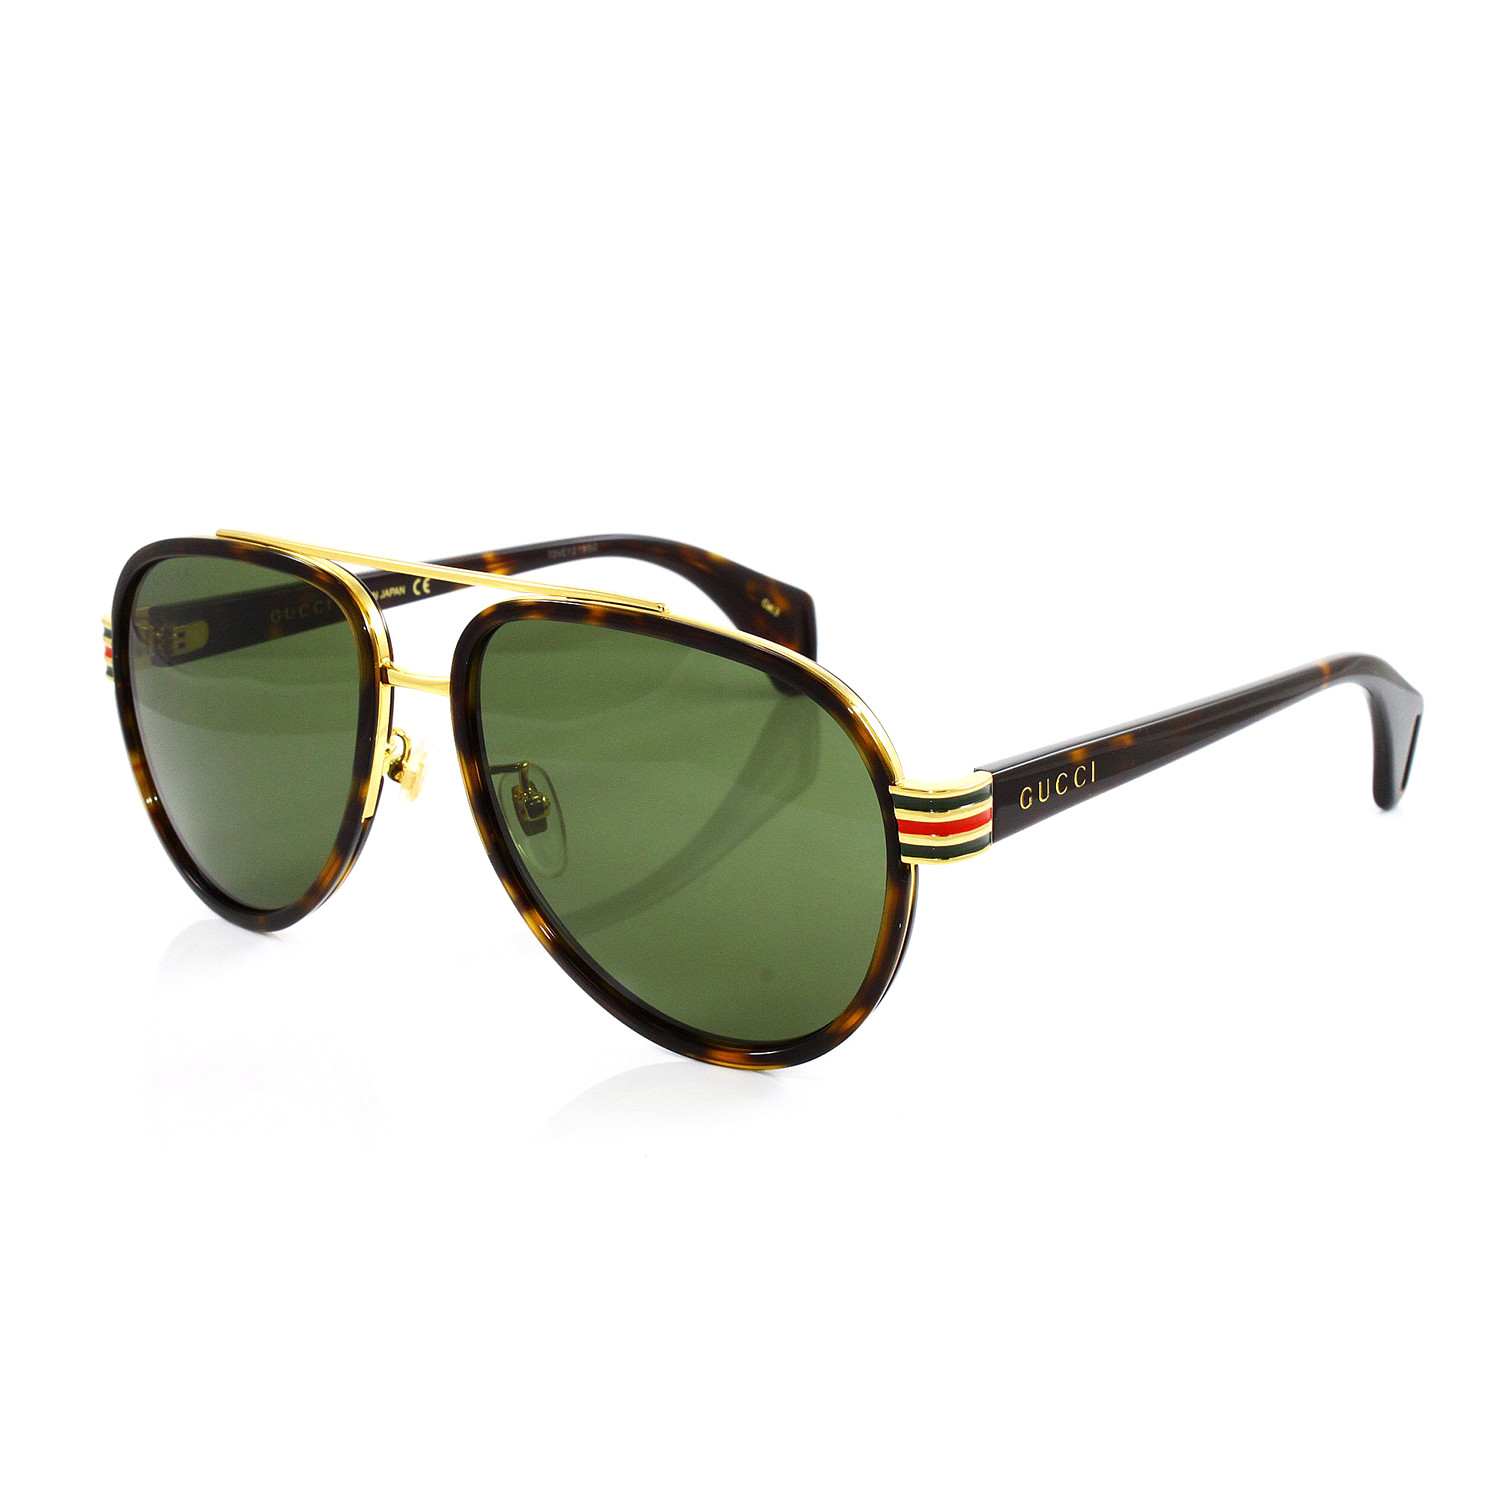 Gucci // Men's GG0447S Sunglasses // Havana + Gold + Green - Gucci ...